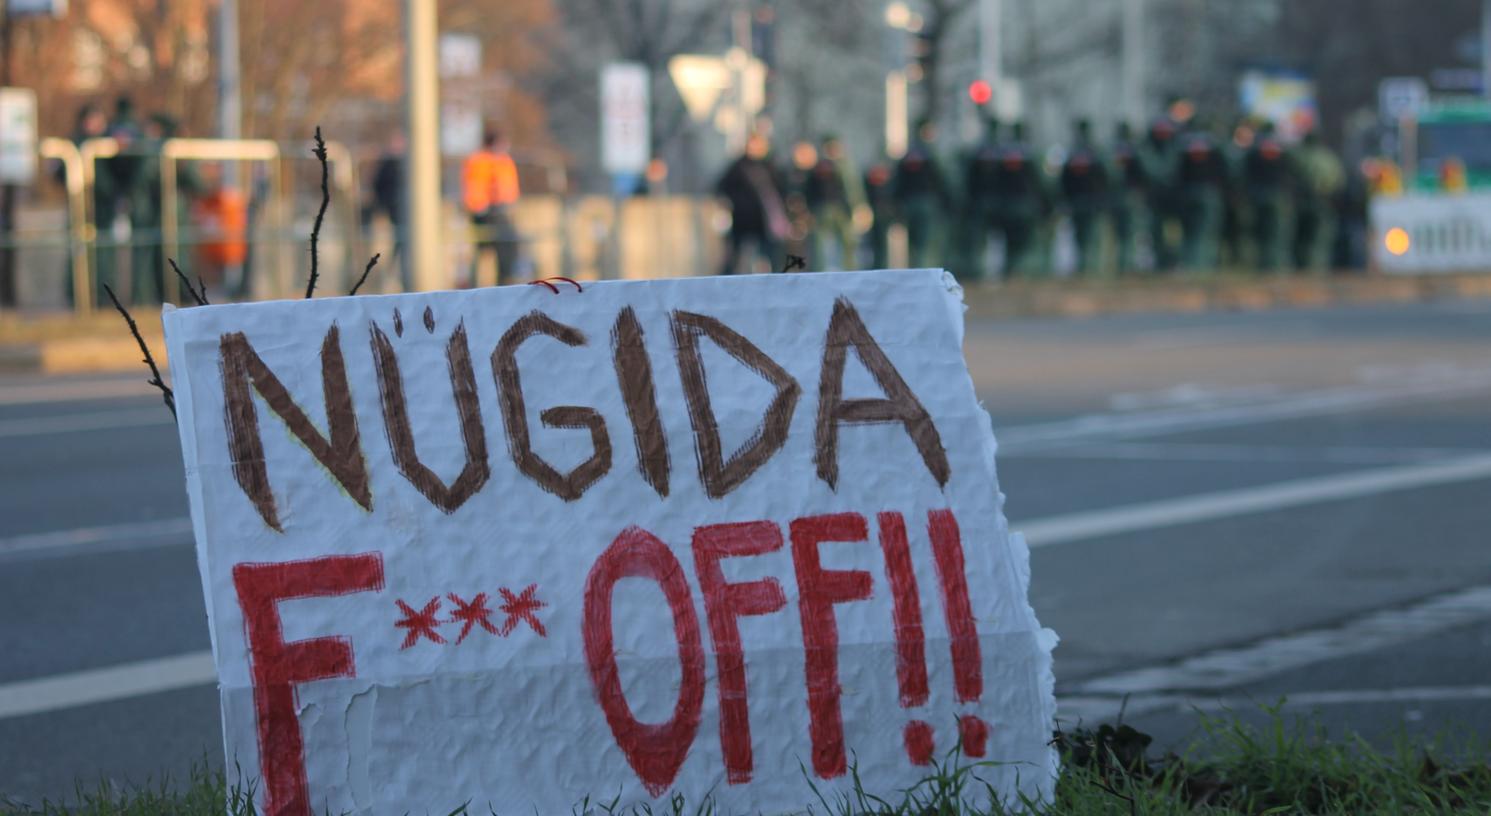 Hier nicht! Bei der bislang einzigen Nügida-Kundgebung setzten die Nürnberger in der Südstadt ein klares Zeichen gegen den örtlichen Pegida-Ableger.